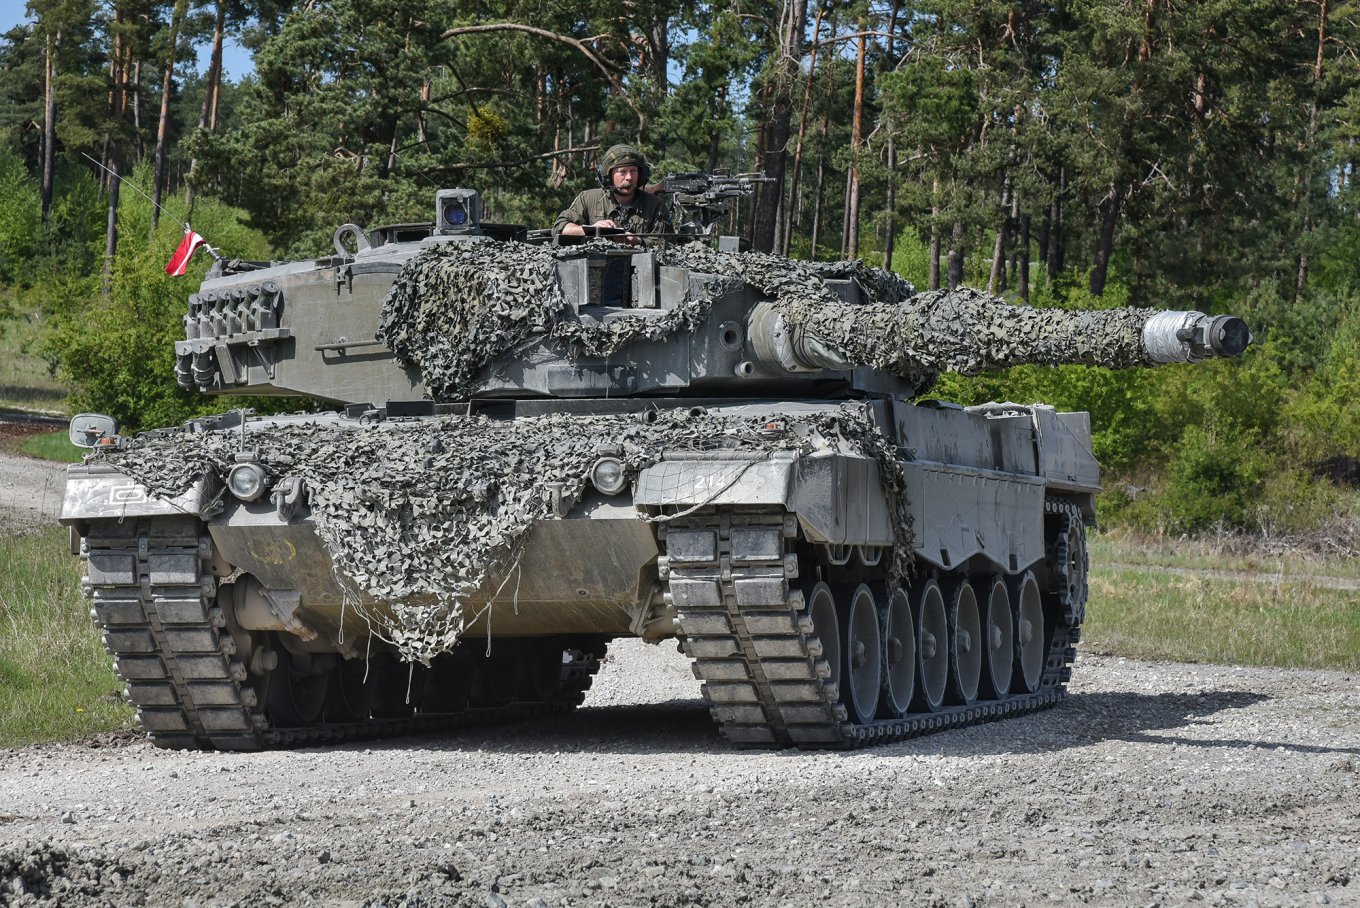 German Leopard 2A4 main battle tank